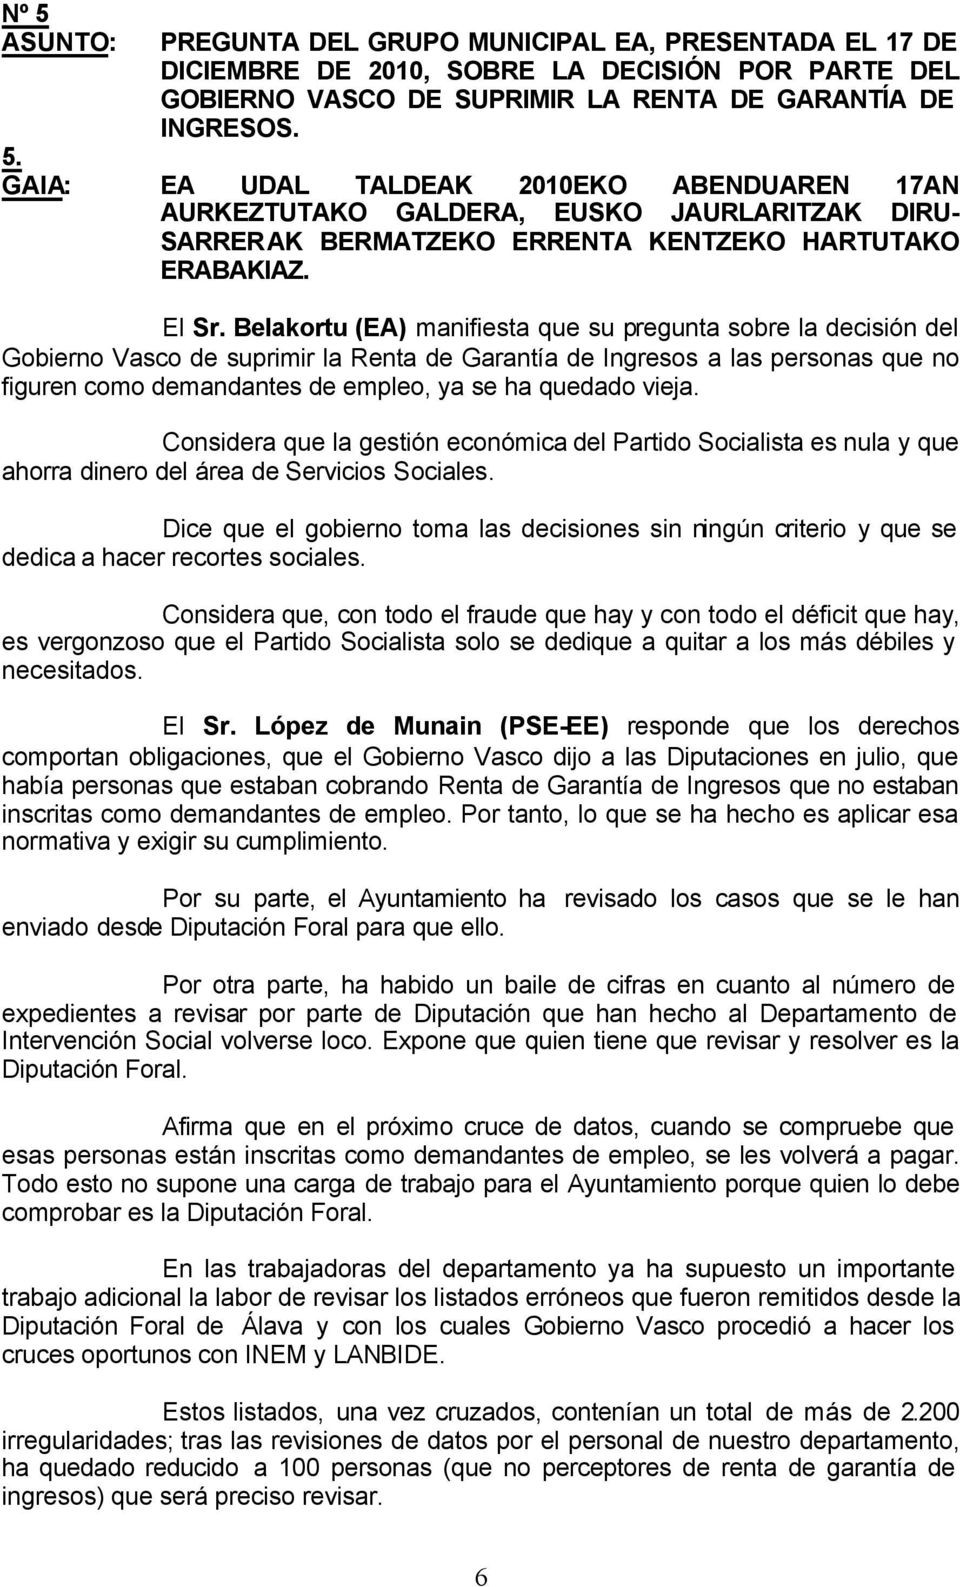 Belakortu (EA) manifiesta que su pregunta sobre la decisión del Gobierno Vasco de suprimir la Renta de Garantía de Ingresos a las personas que no figuren como demandantes de empleo, ya se ha quedado